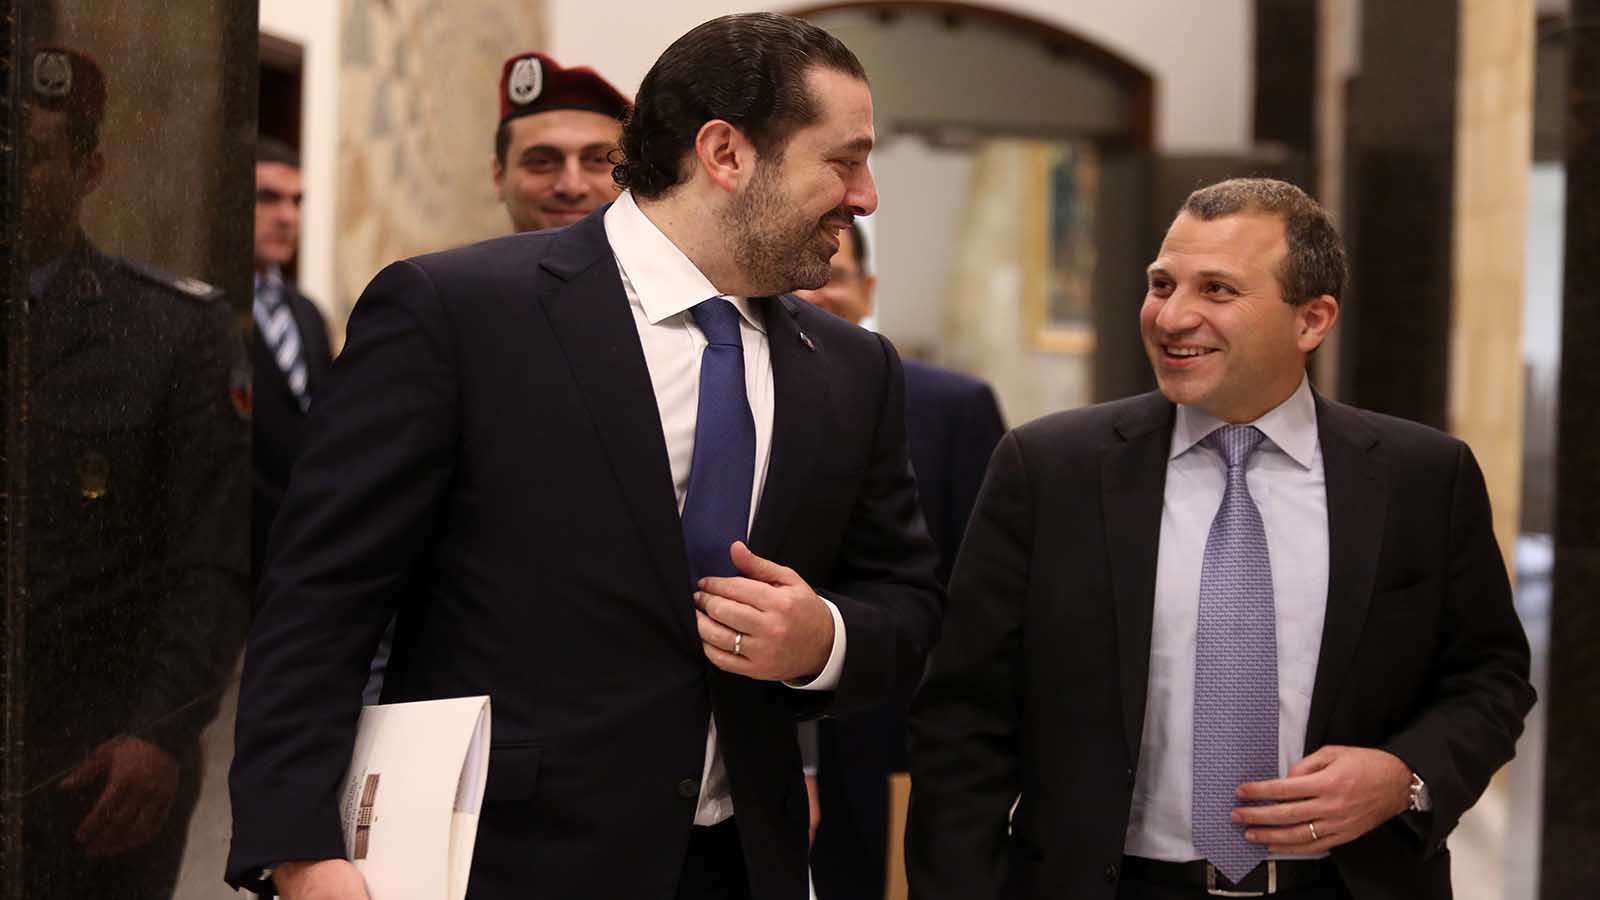 الوزراء يصفقون لأنفسهم: لبنان دولة نفطية